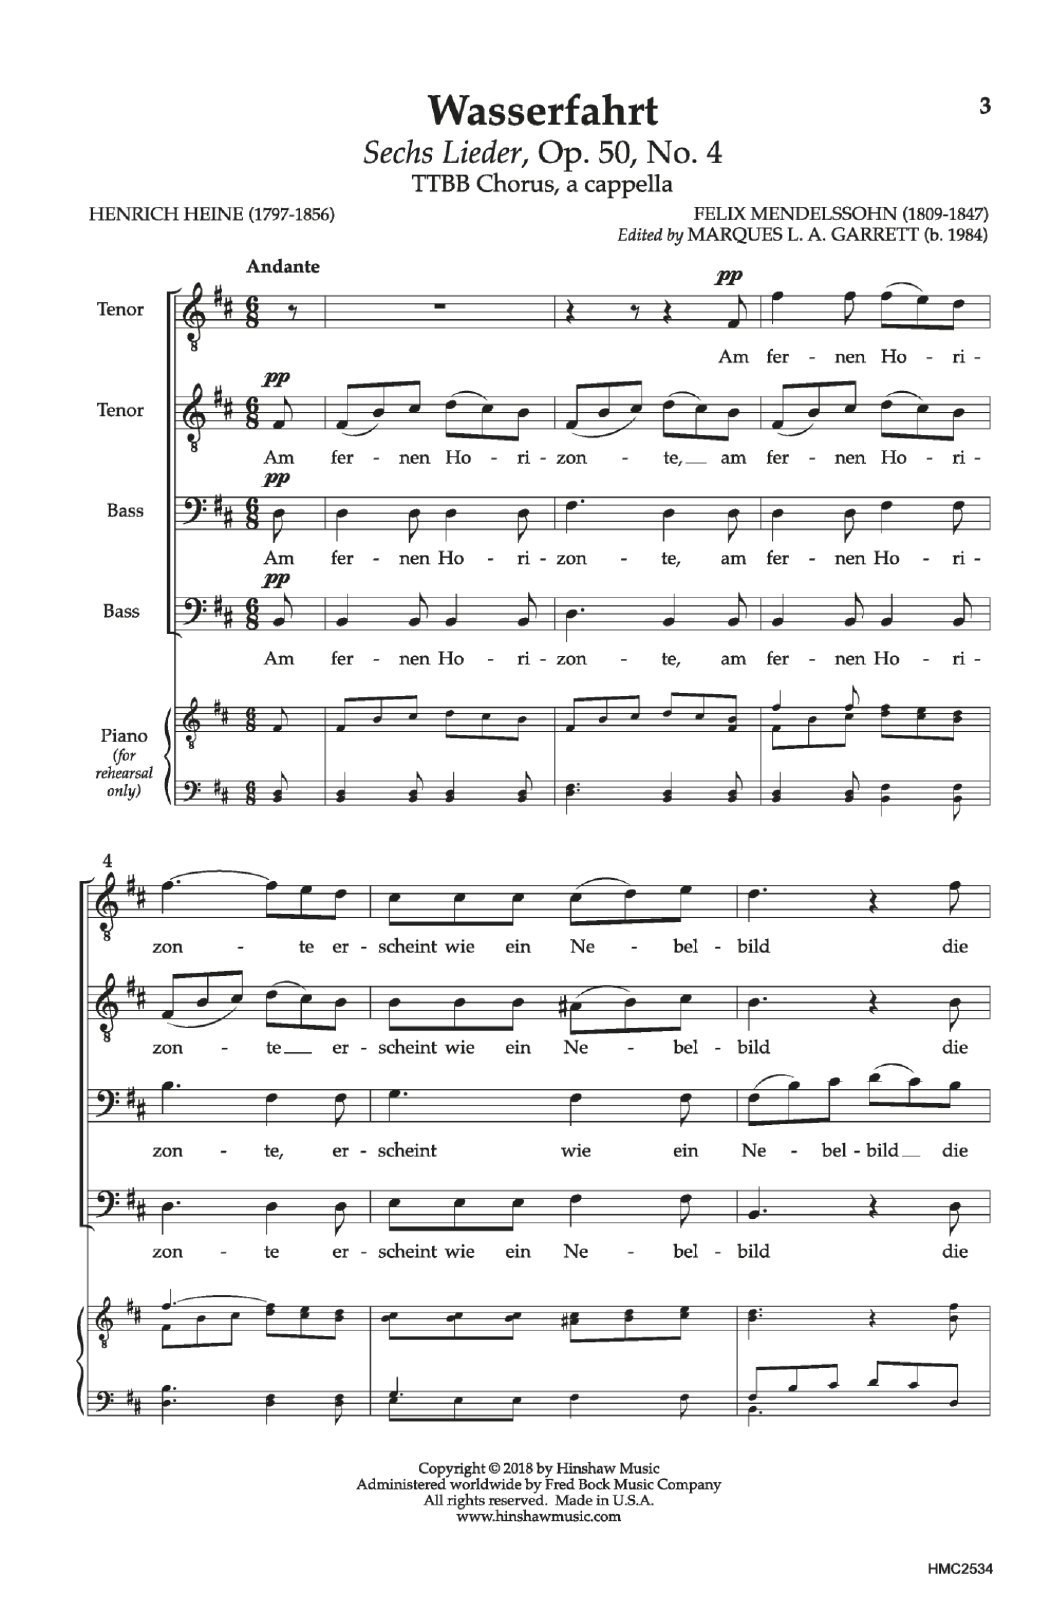 Download Felix Mendelssohn Wasserfahrt Sheet Music